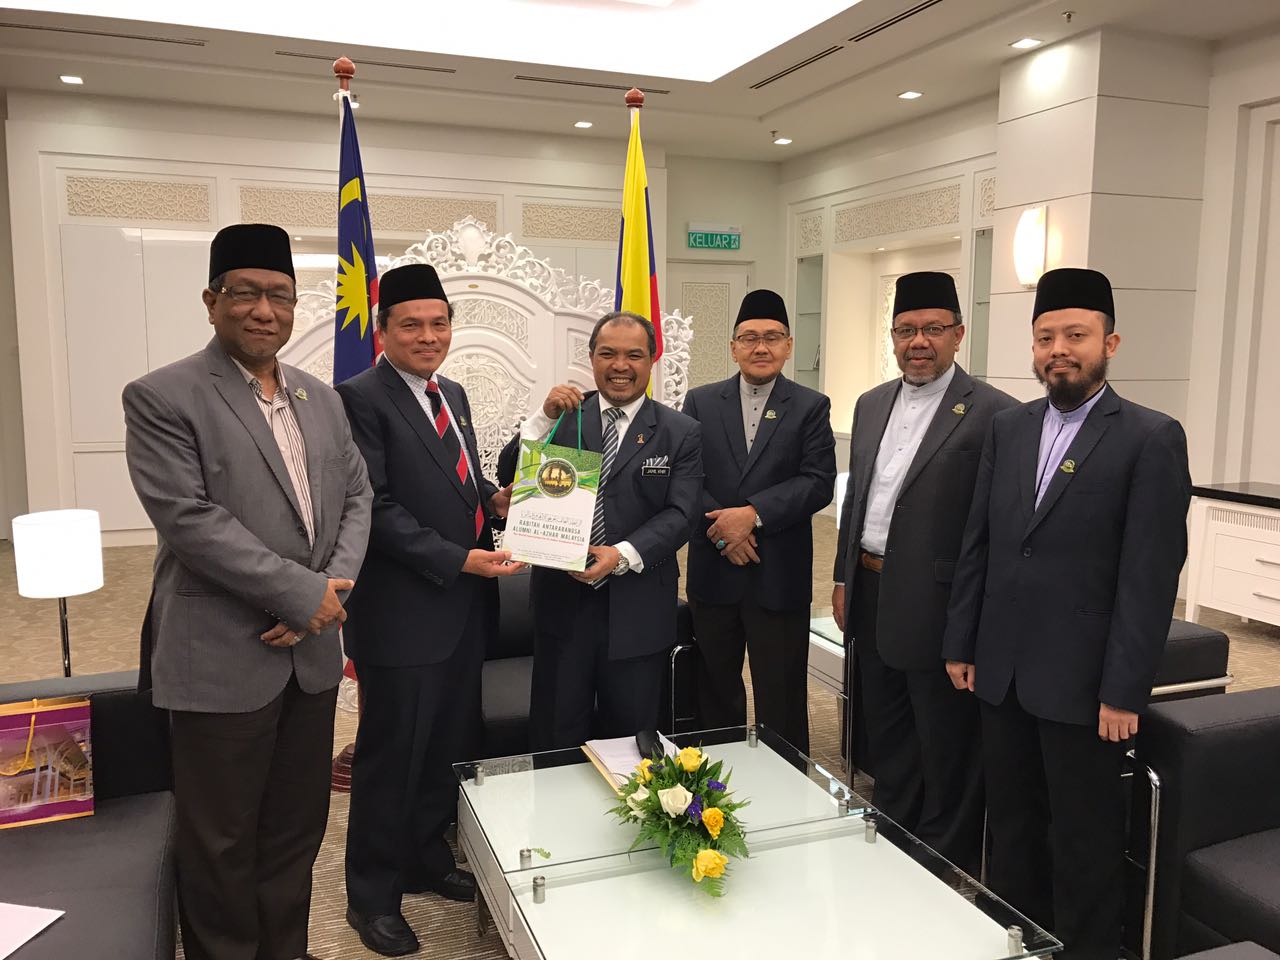   رئيس الوزراء الماليزى يعين أربعة من أعضاء فرع منظمة خريجى الأزهر بالمجلس الاستشارى الإسلامى